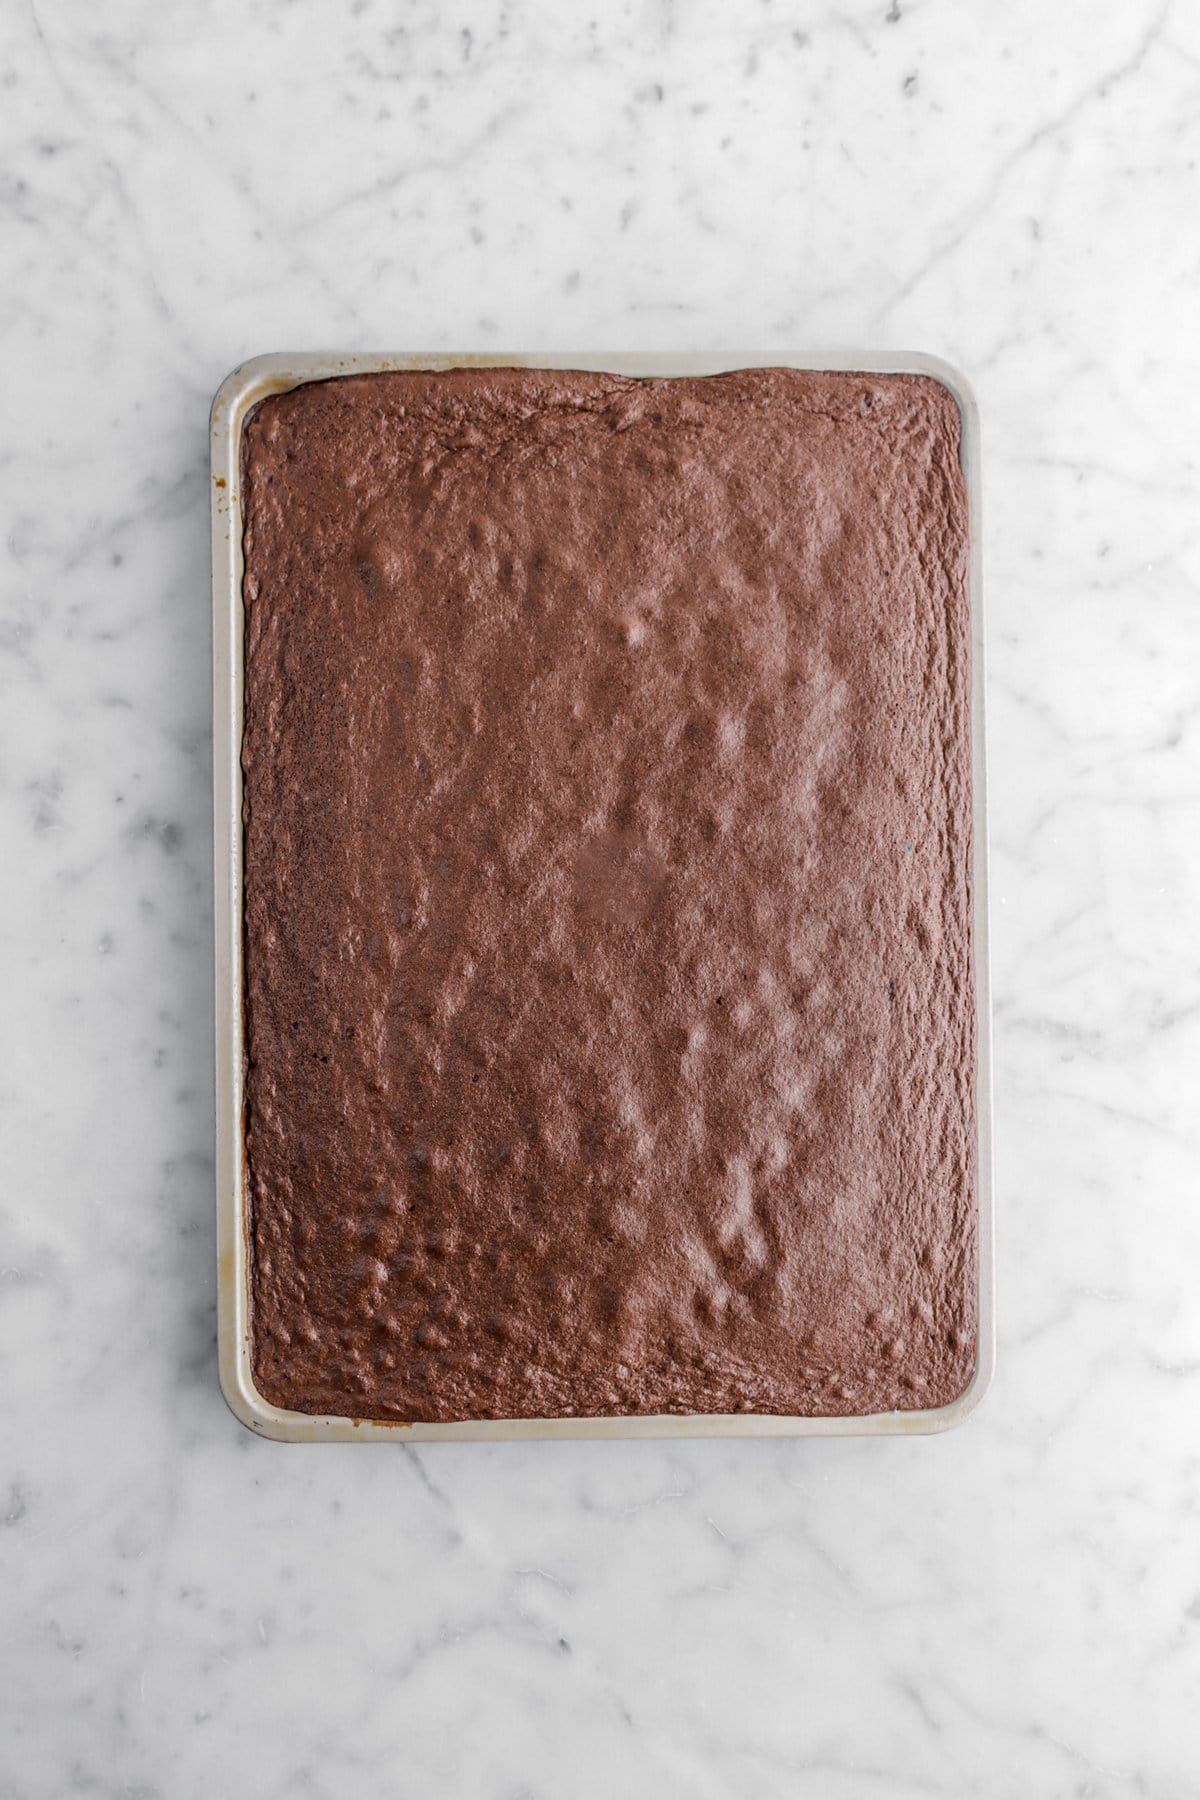 baked chocolate cake in sheet pan.